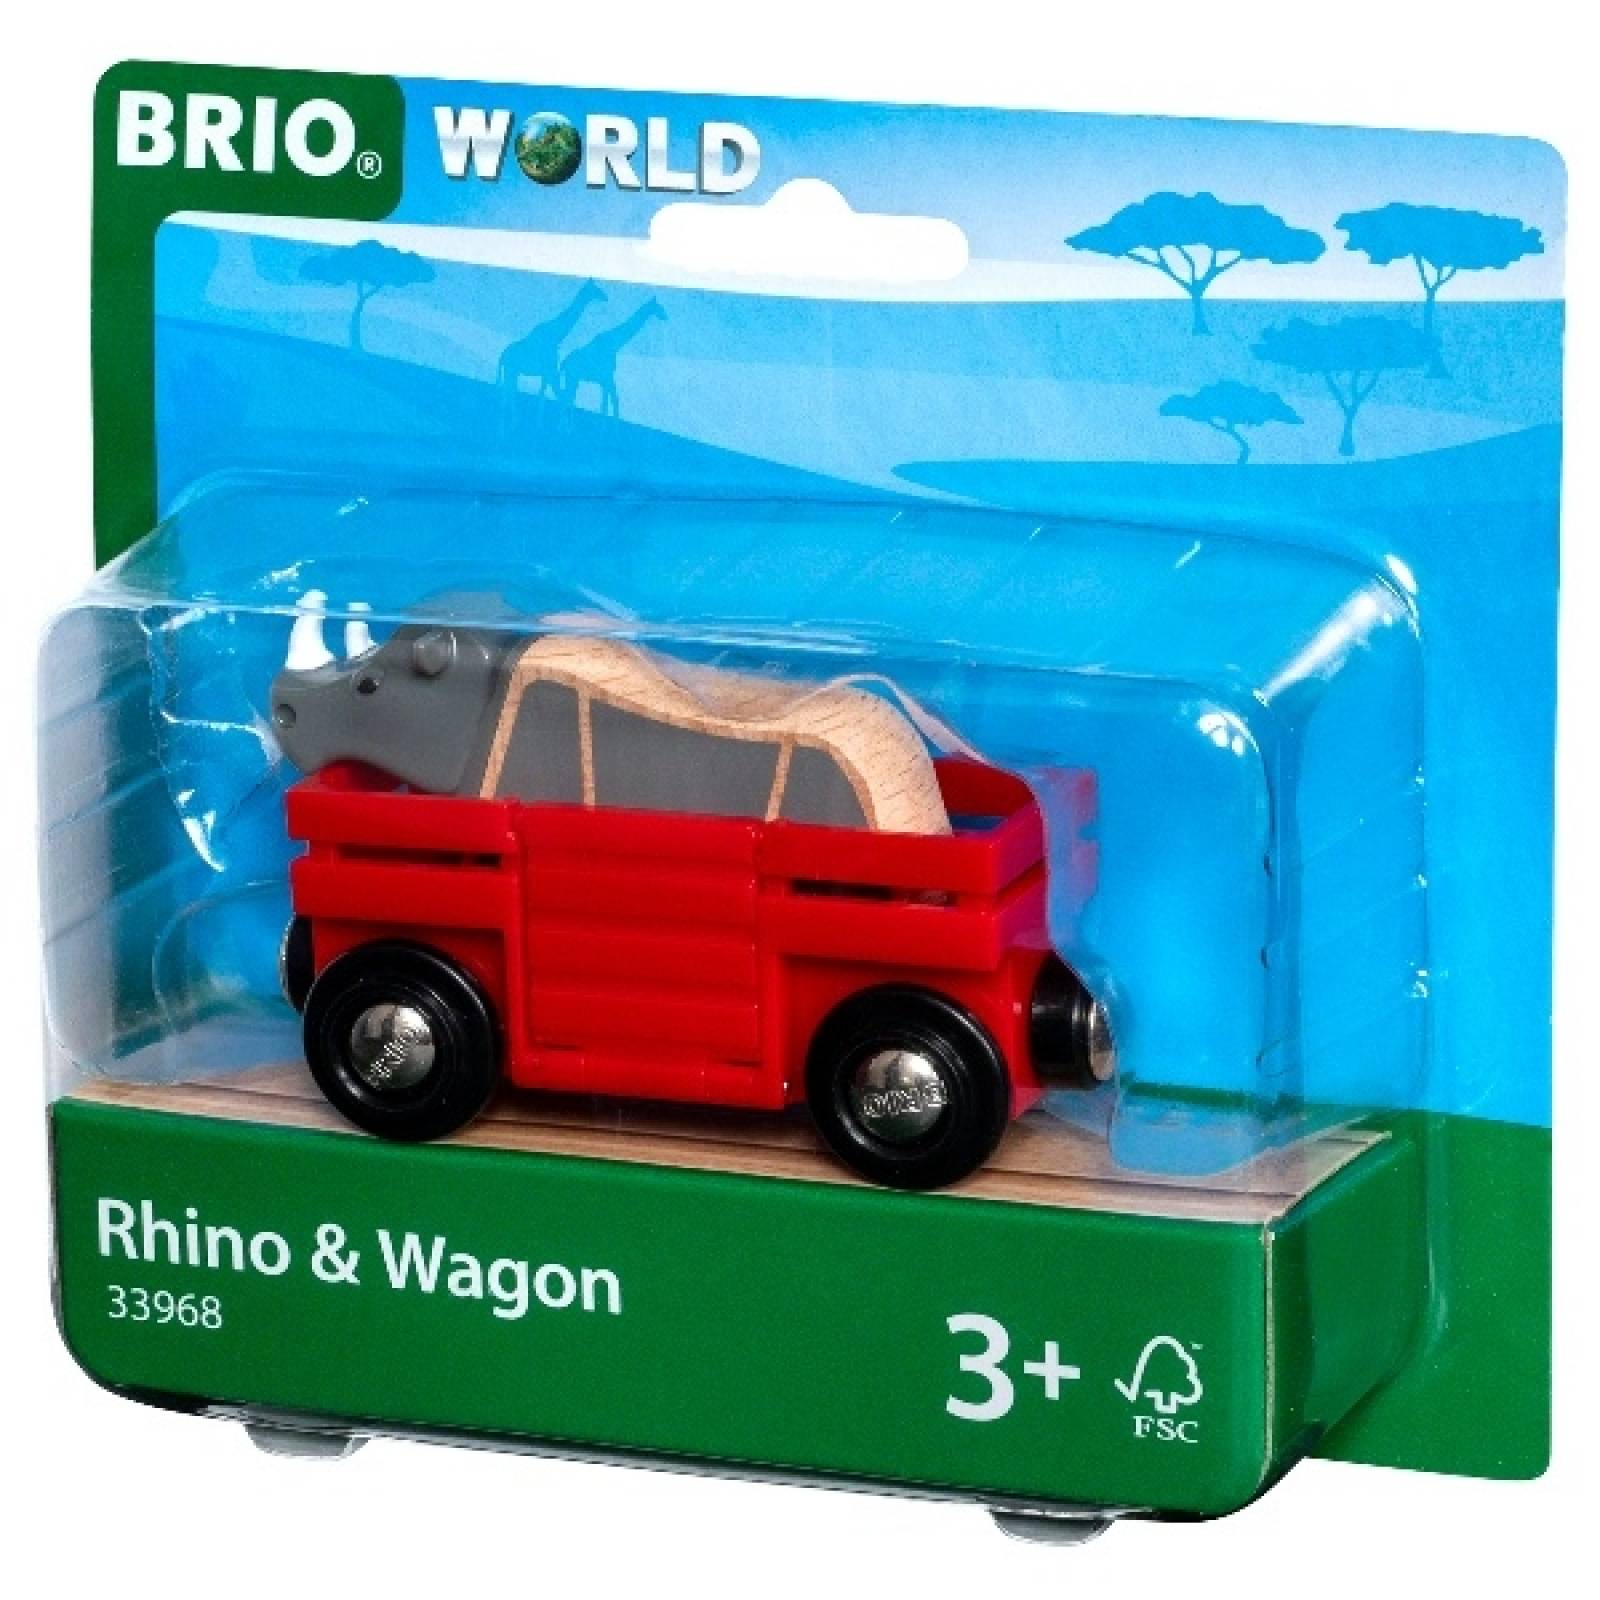 Rhino & Wagon BRIO Wooden Railway Age 3+